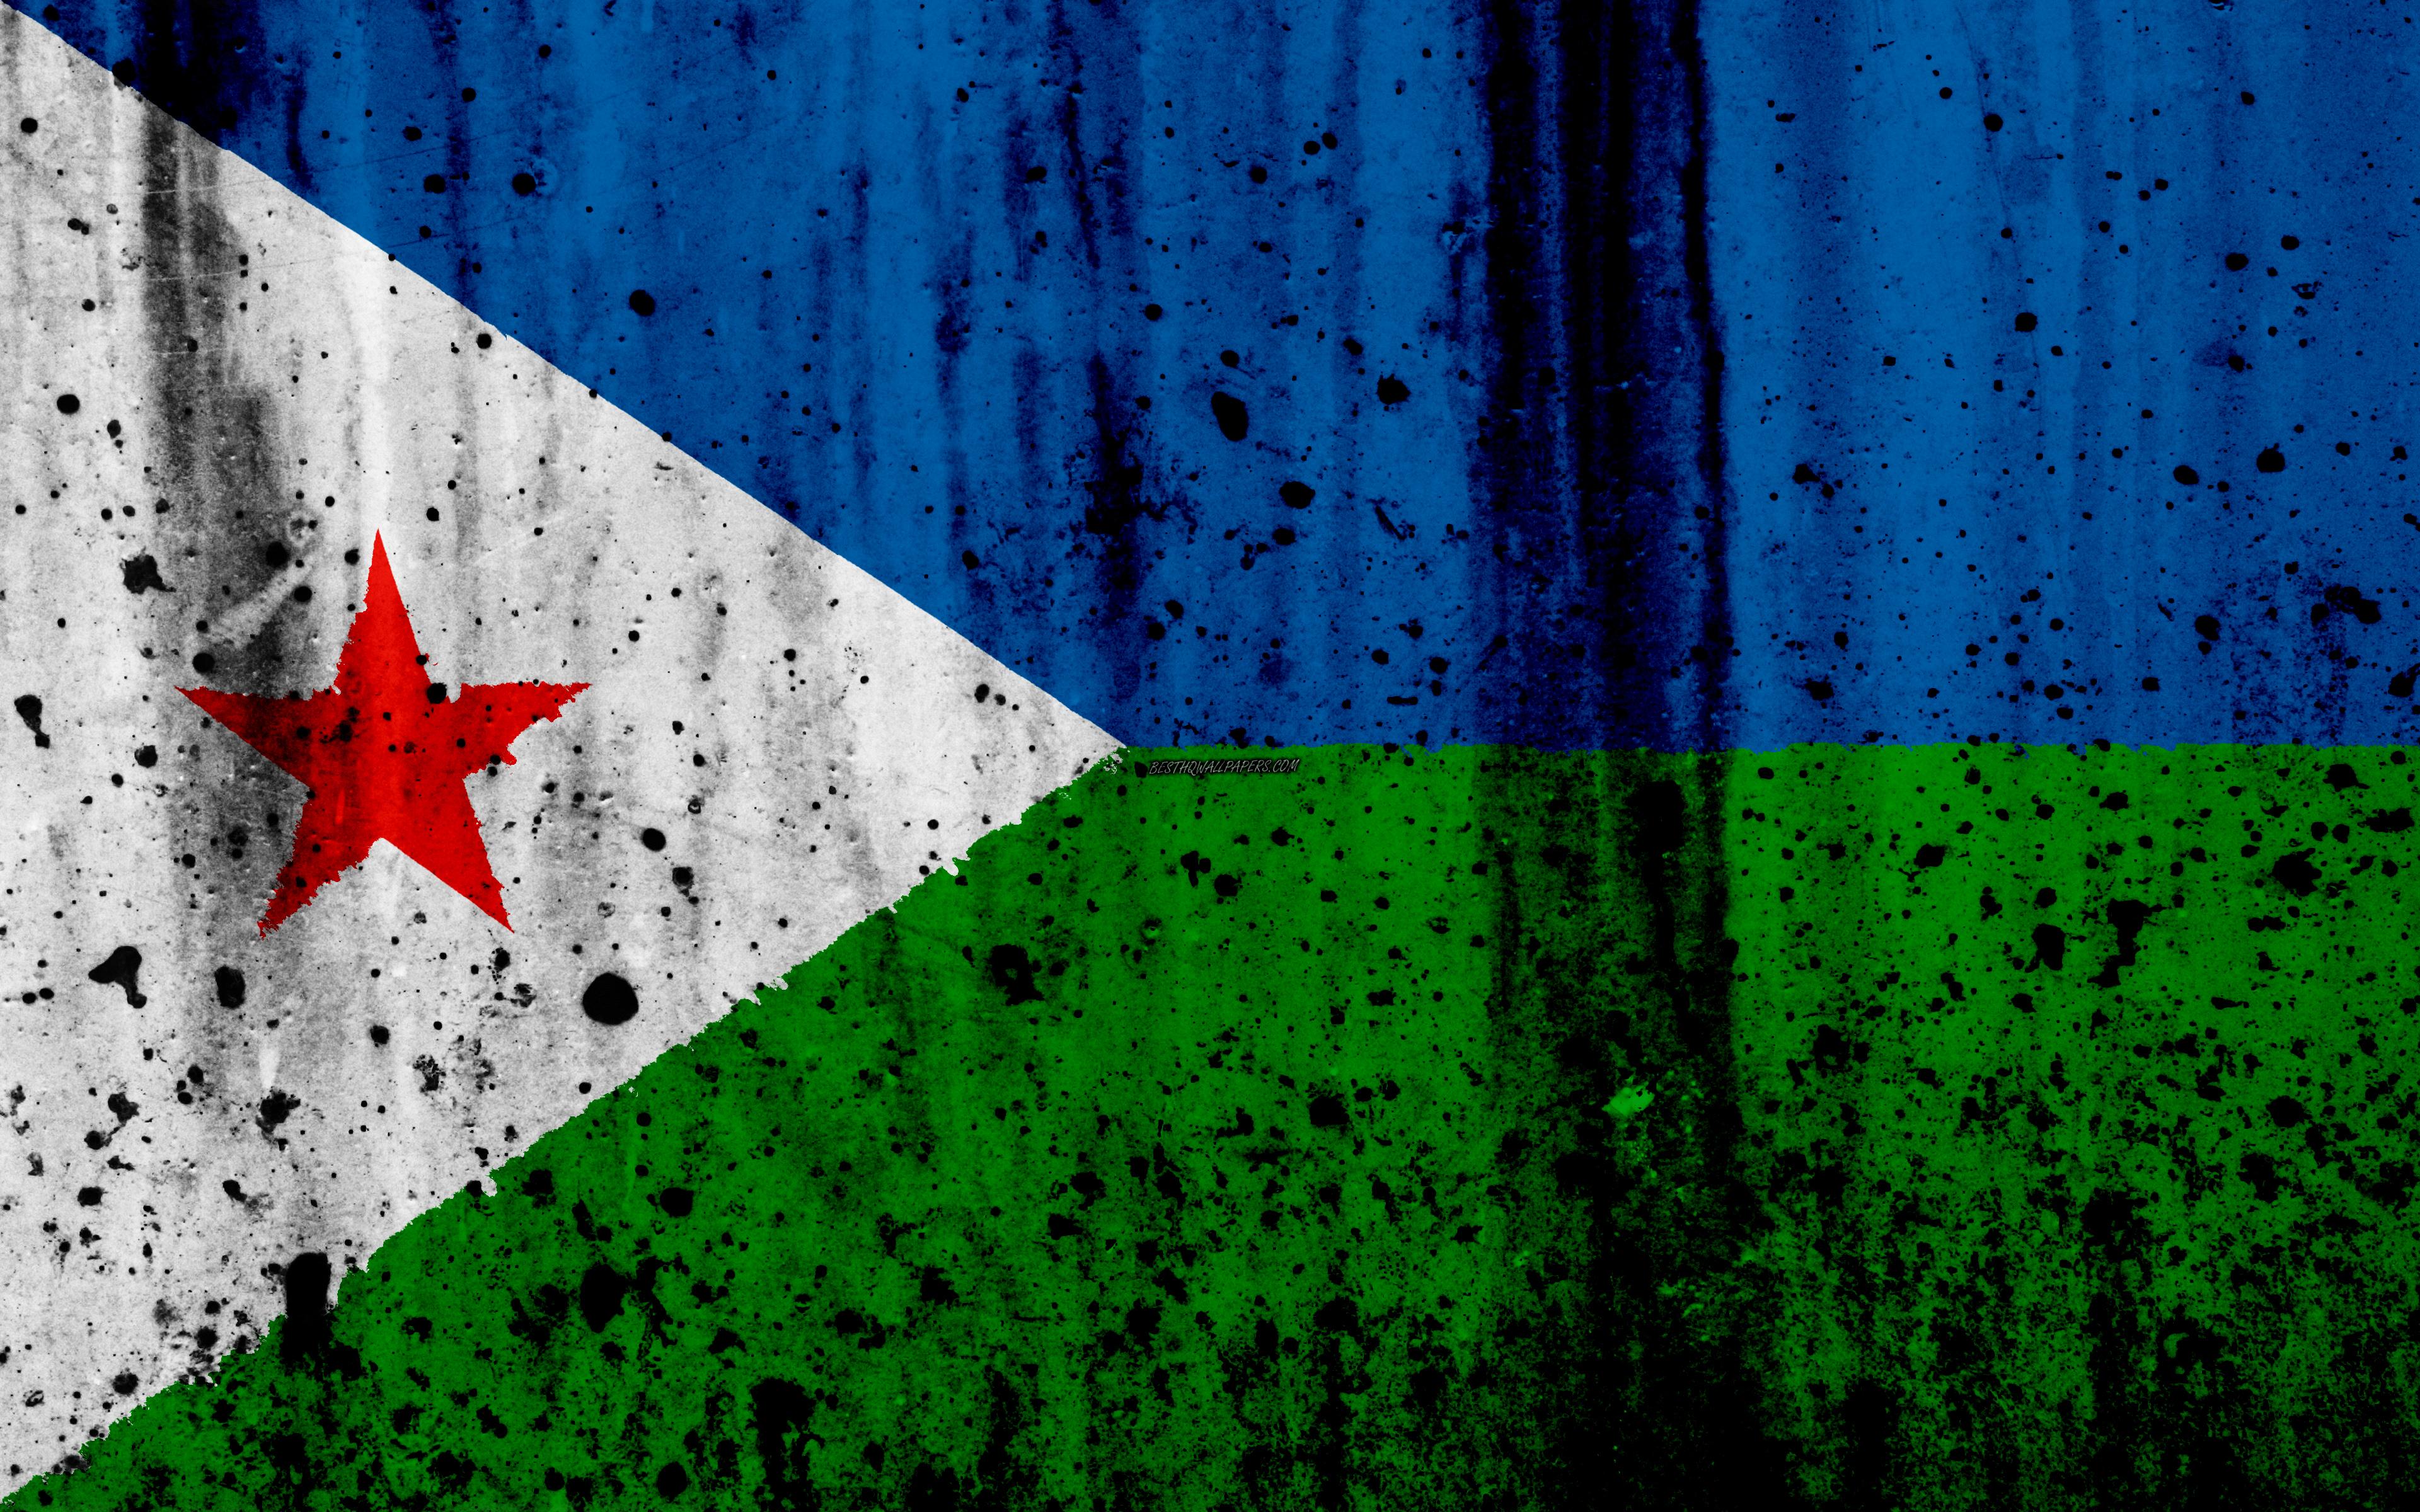 Download wallpaper Djibouti flag, 4k, grunge, flag of Djibouti